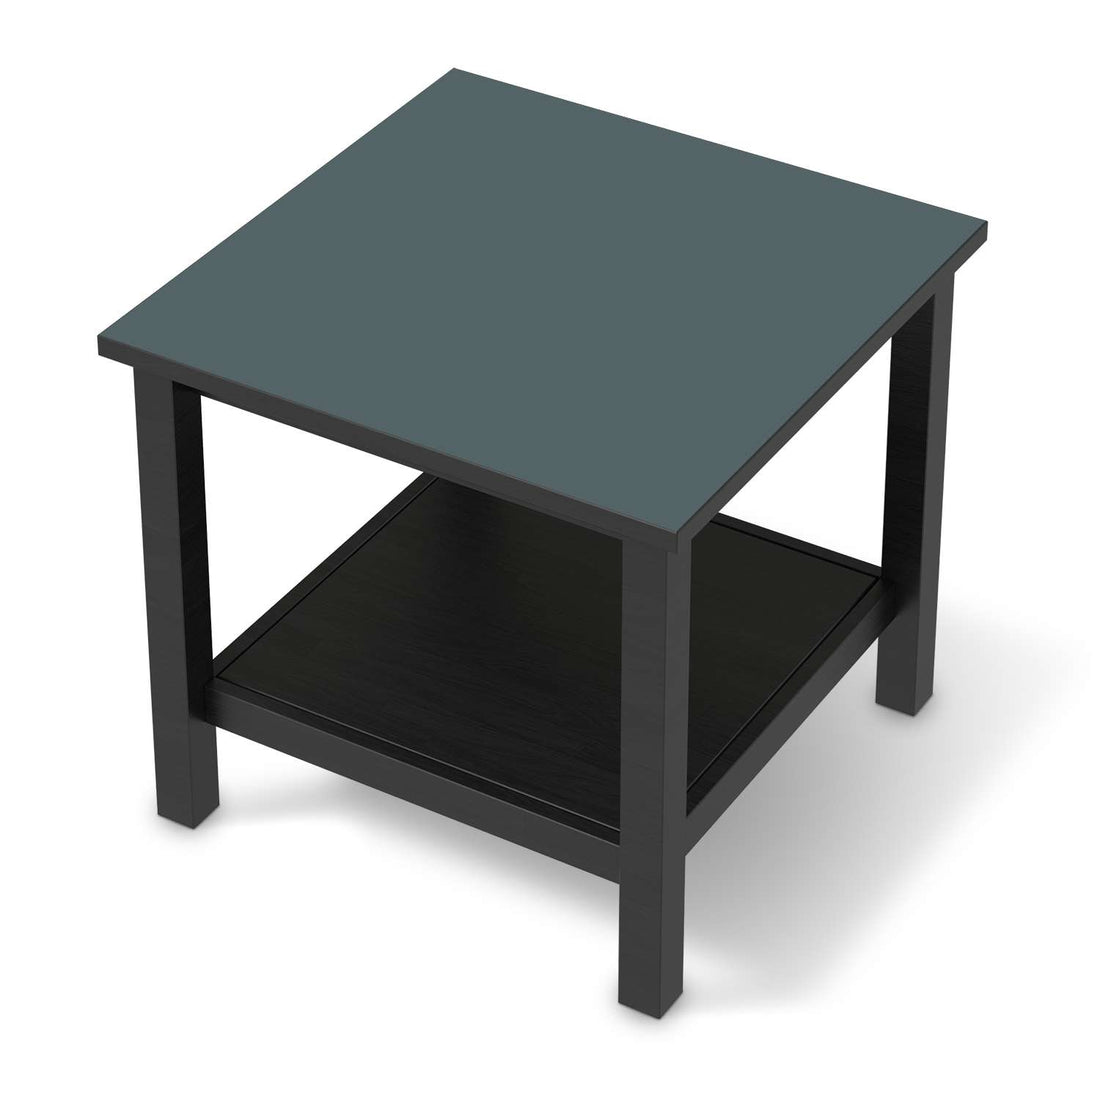 Möbel Klebefolie Blaugrau Light - IKEA Hemnes Beistelltisch 55x55 cm - schwarz